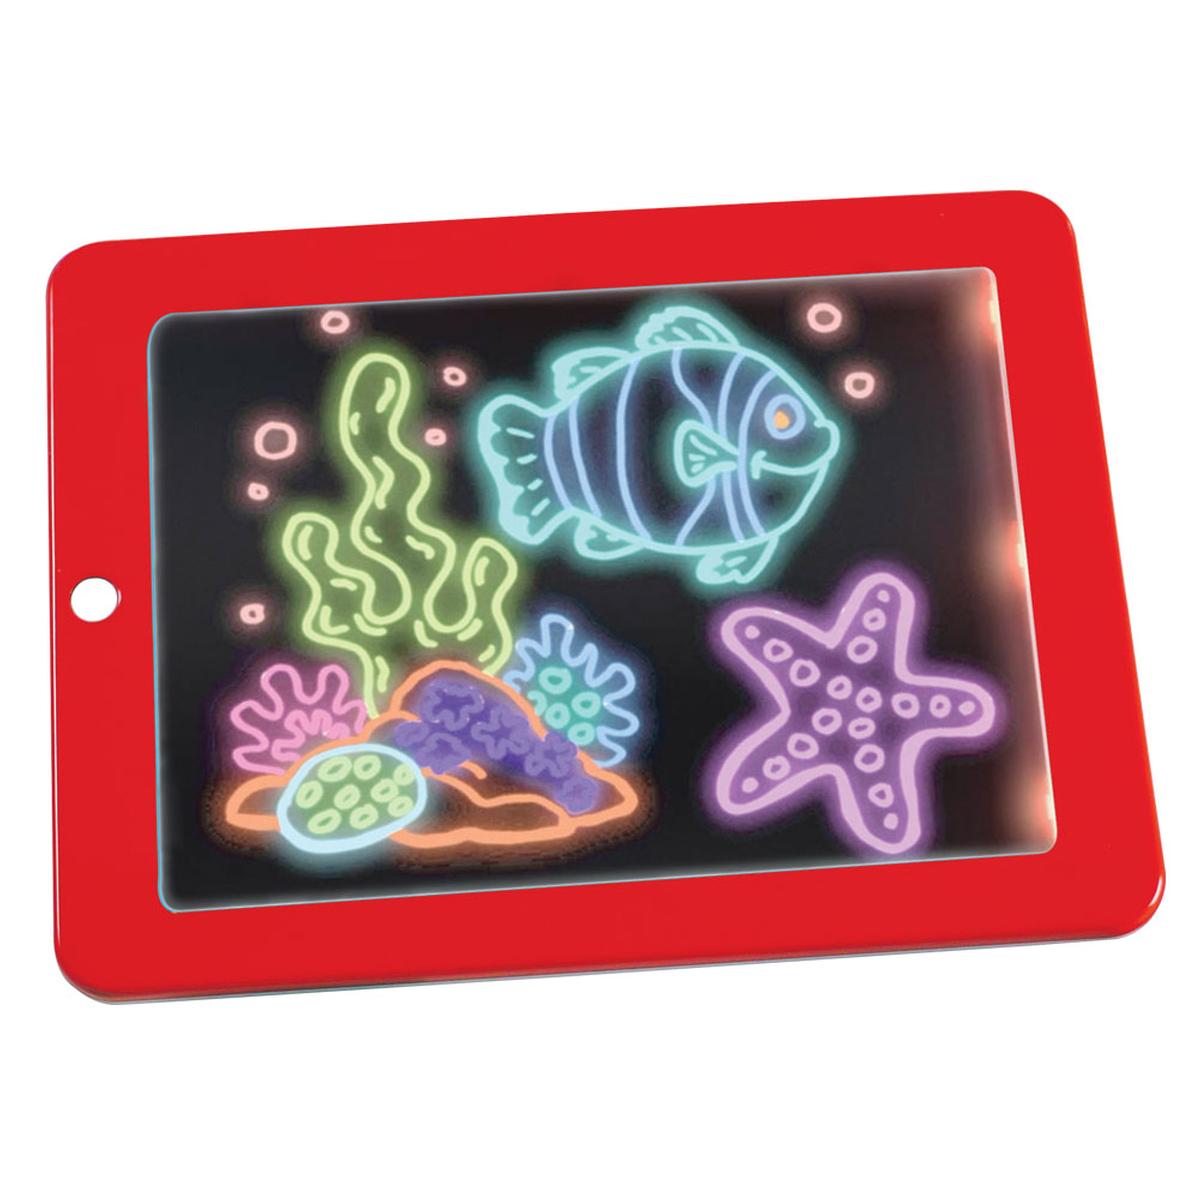 Magic pad купить. Magic Pad Волшебный планшет. DT-235 планшет для рисования Magic Pad. Планшет для рисования светом детский Magic Pad. Планшет для рисования детский с подсветкой.